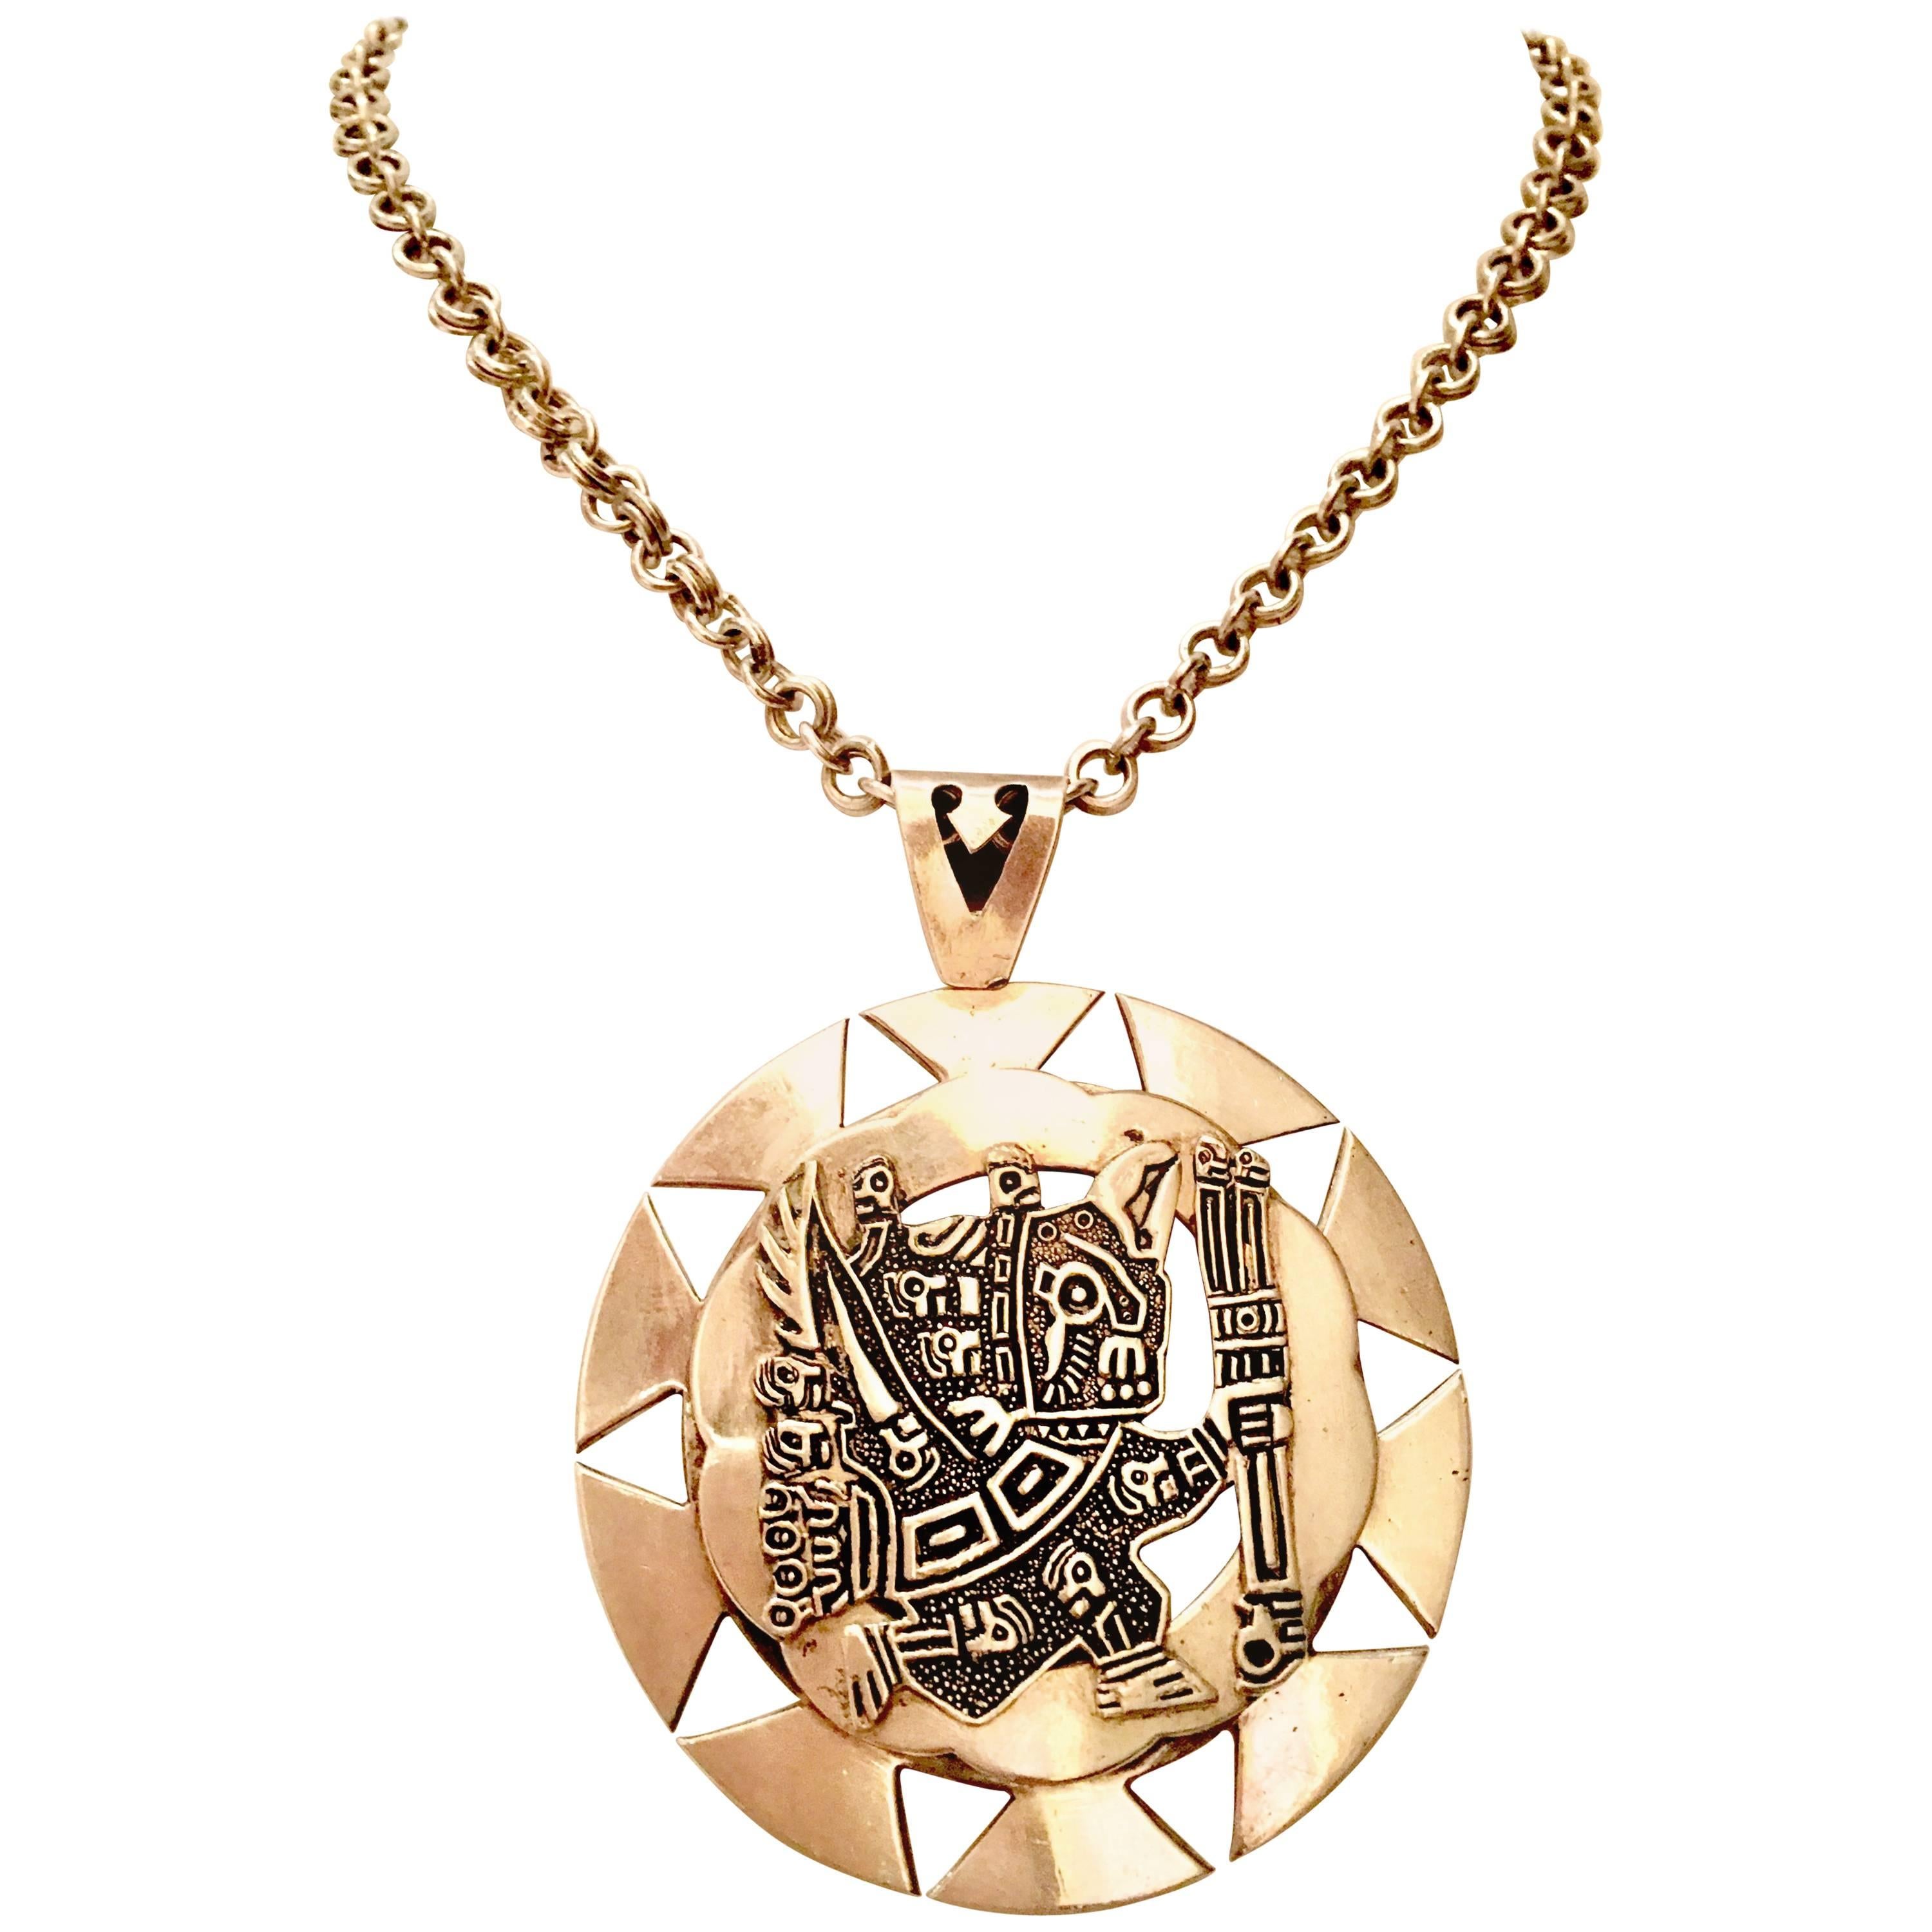 Vintage Sterling 925 Aztec Sun God Medallion Pendant Necklace- Signed Peru MML